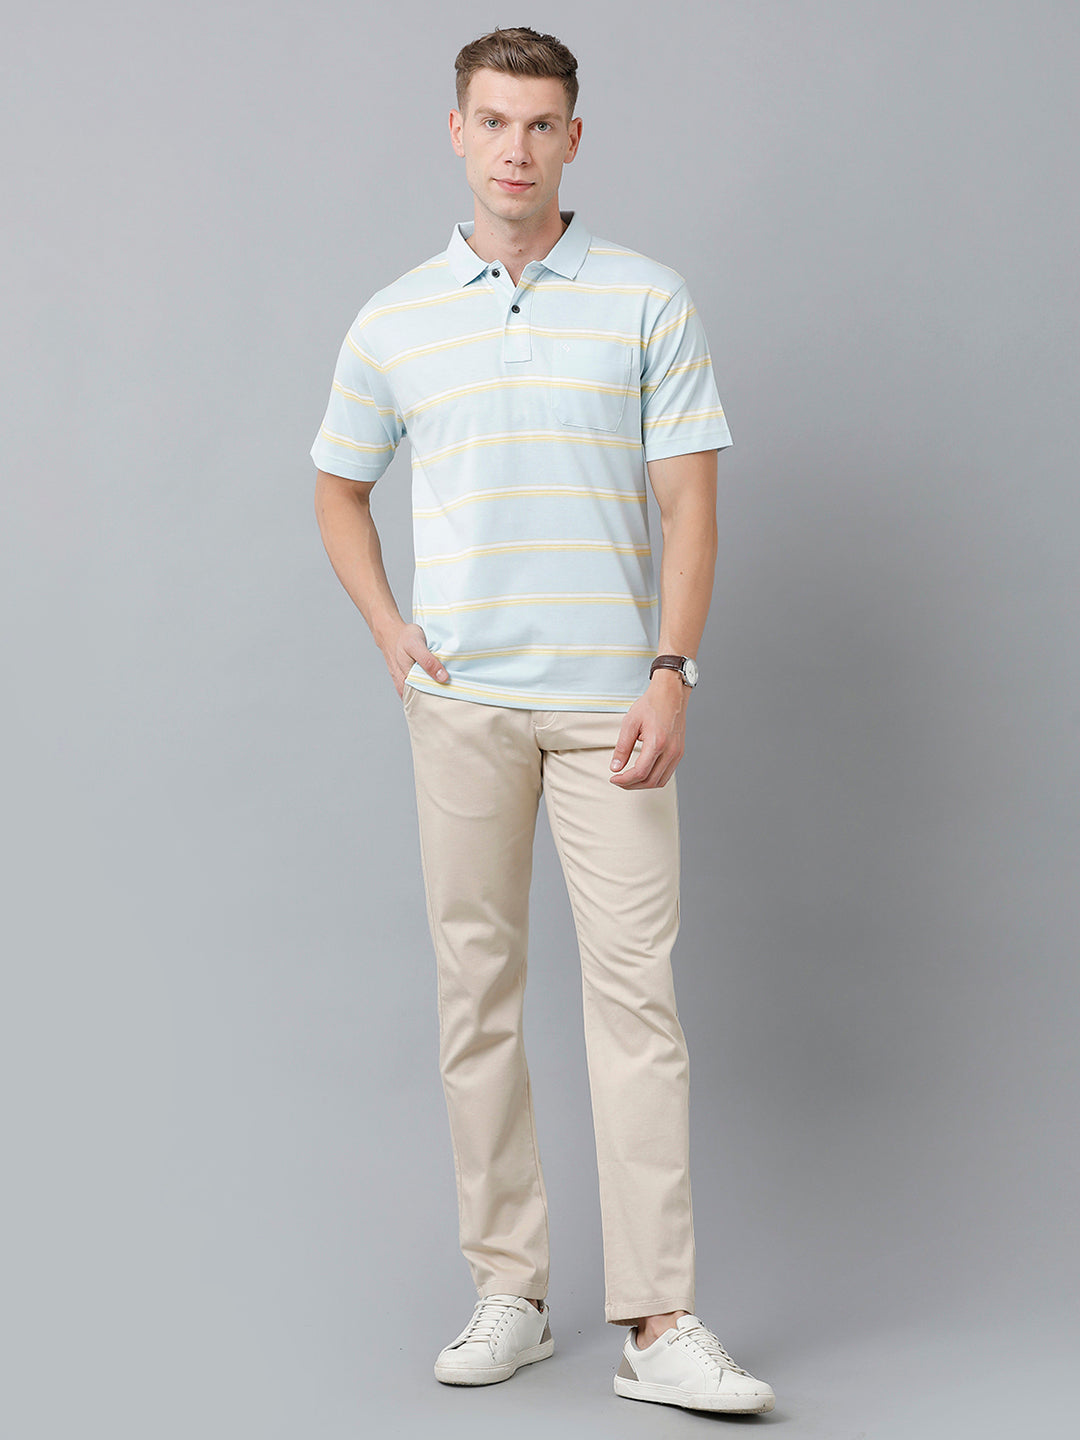 Classic Polo Men's Cotton Blend Half Sleeve Striped Authentic Fit Polo Neck Light Blue Color T-Shirt | Avon - 514 B